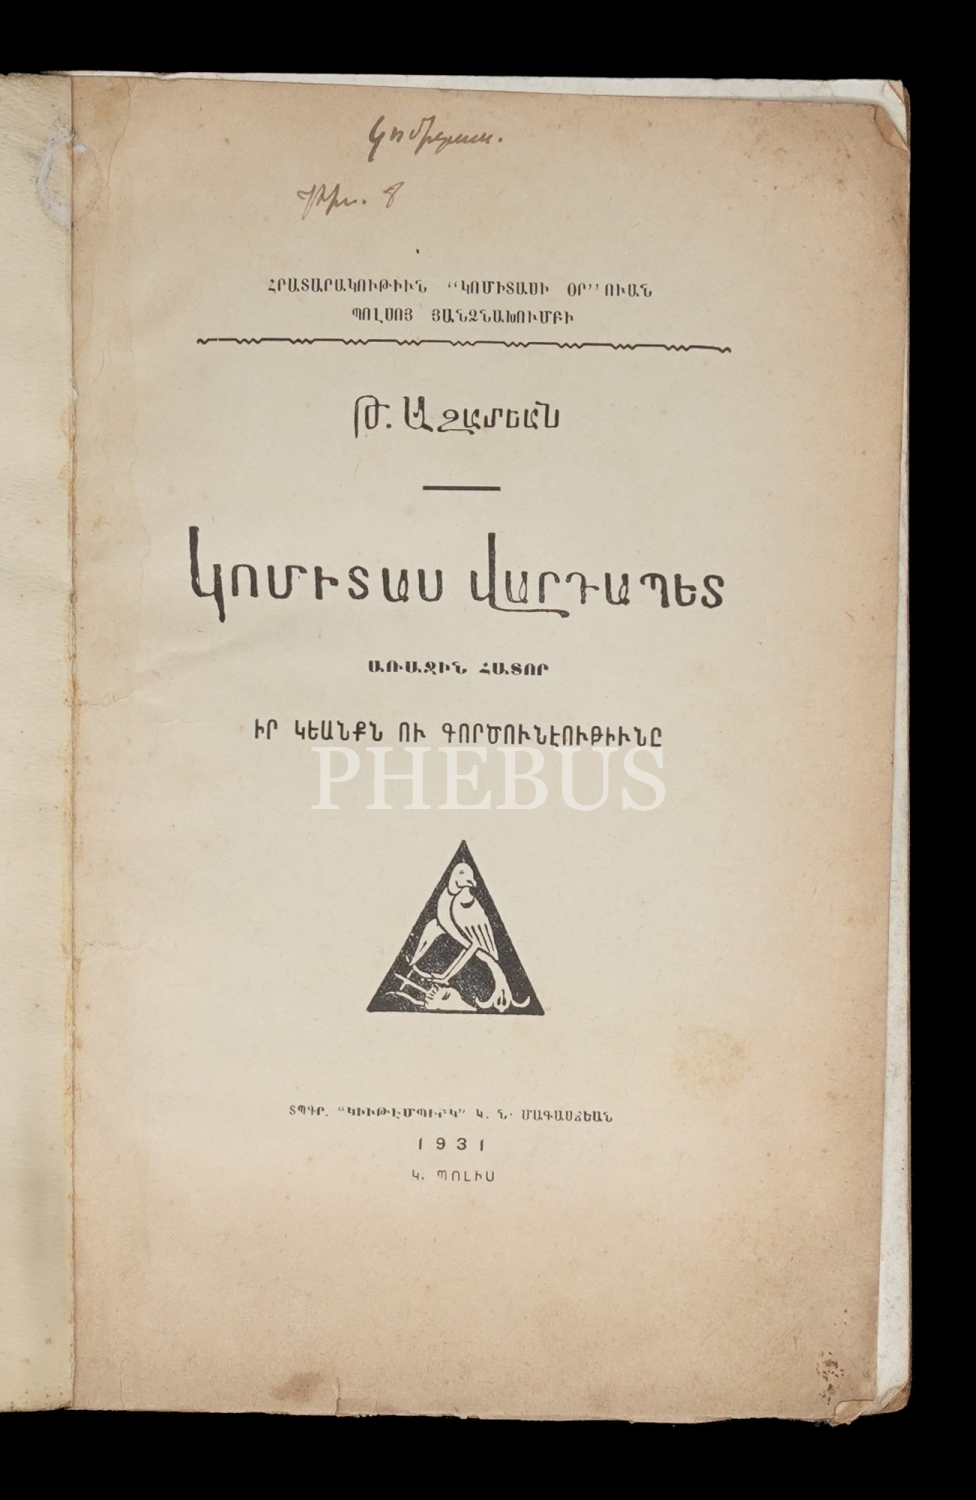 GOMIDAS VARTABED, 1.Cilt, Toros Azadyan, 1931, G. N. Makascıyan Matbaası, 168 sayfa, 16x23 cm...